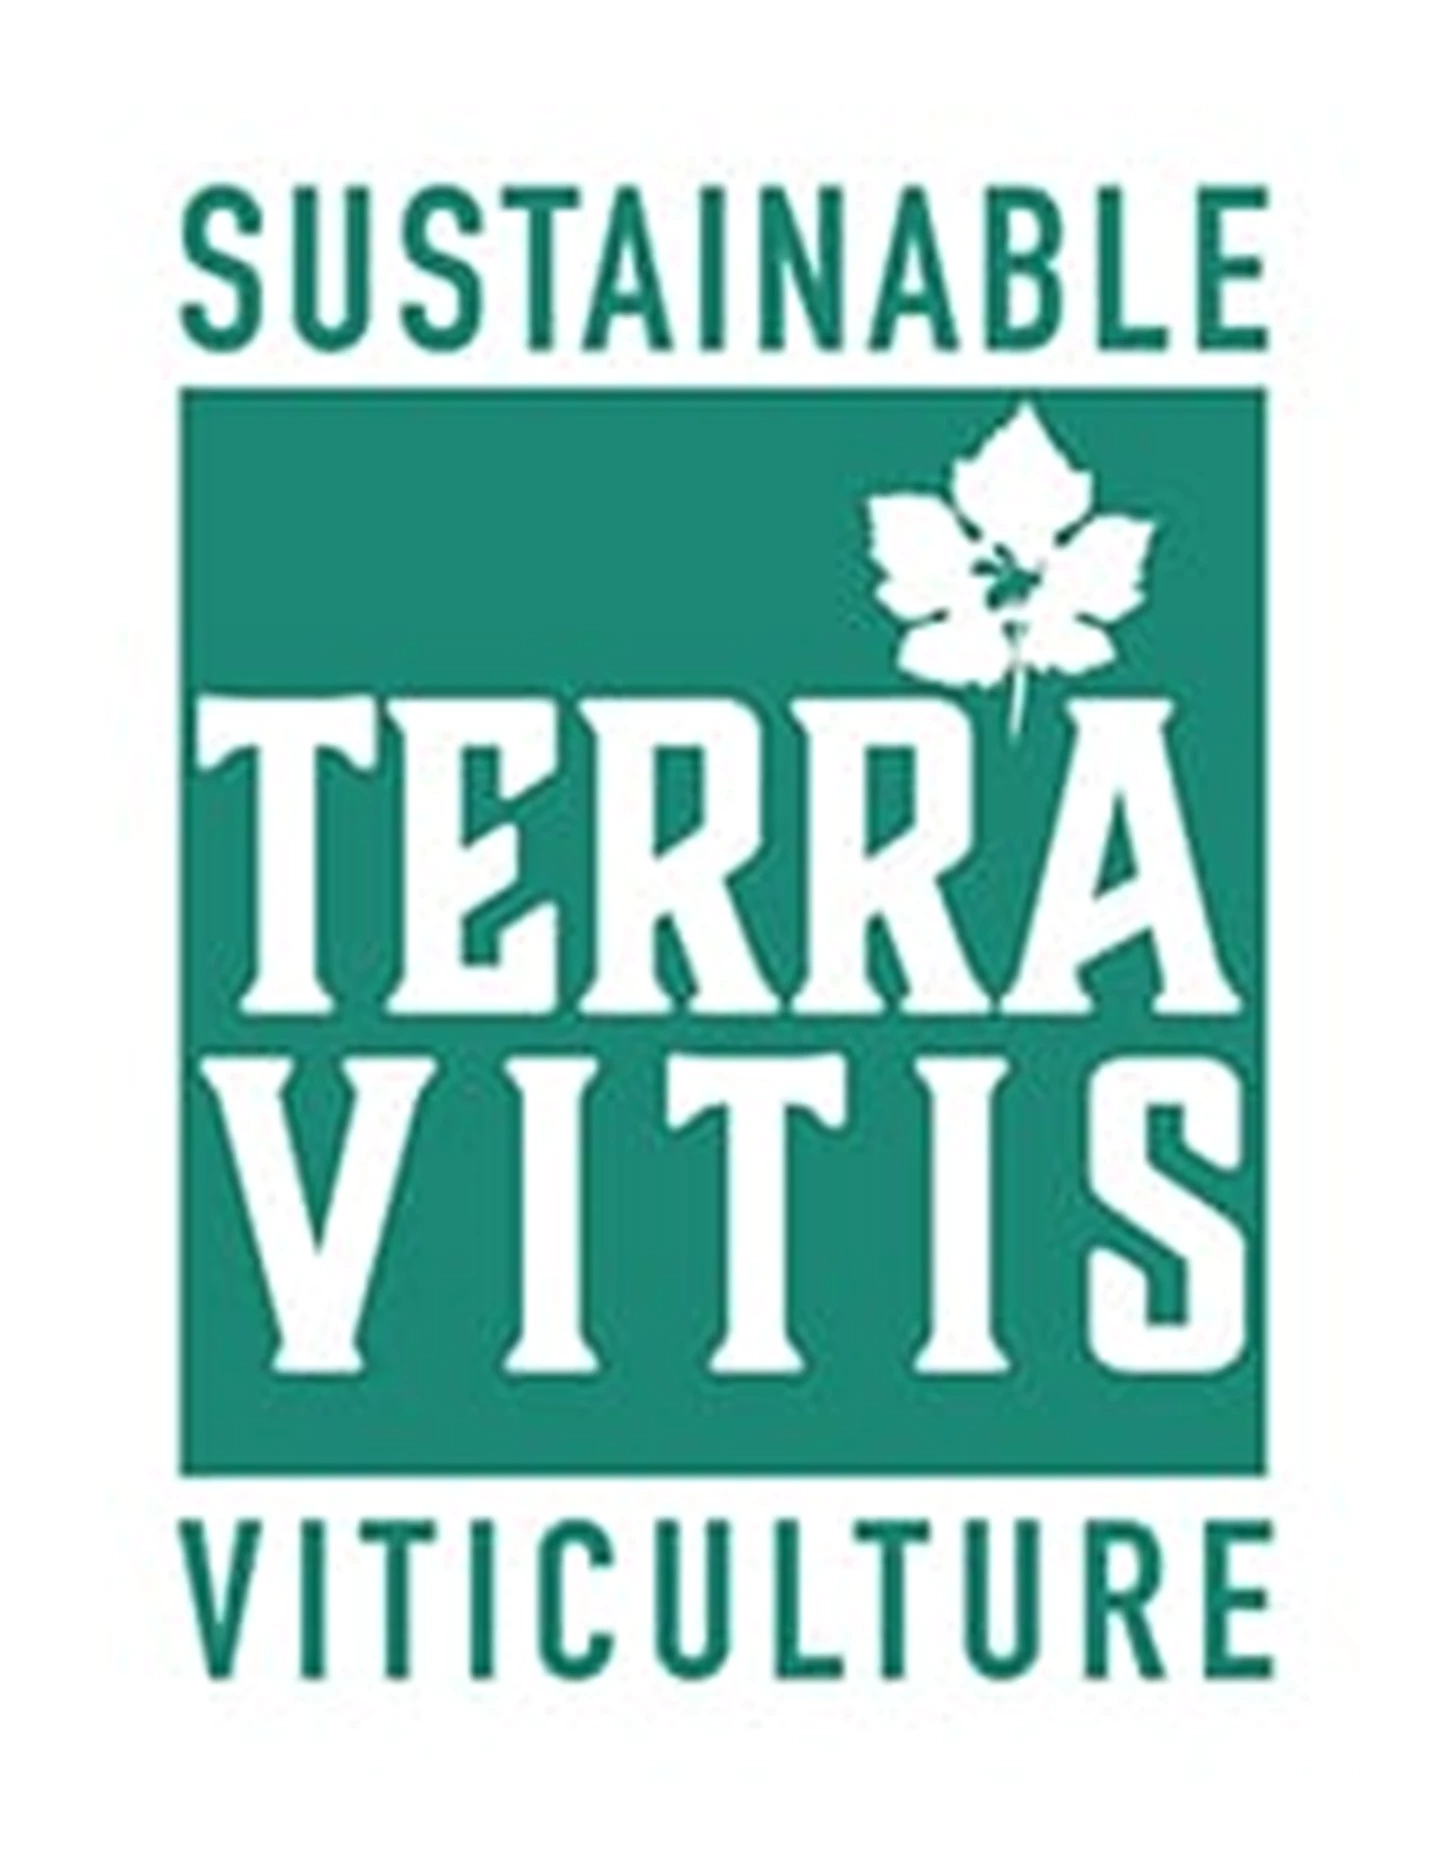 Terra_Vitis_logo